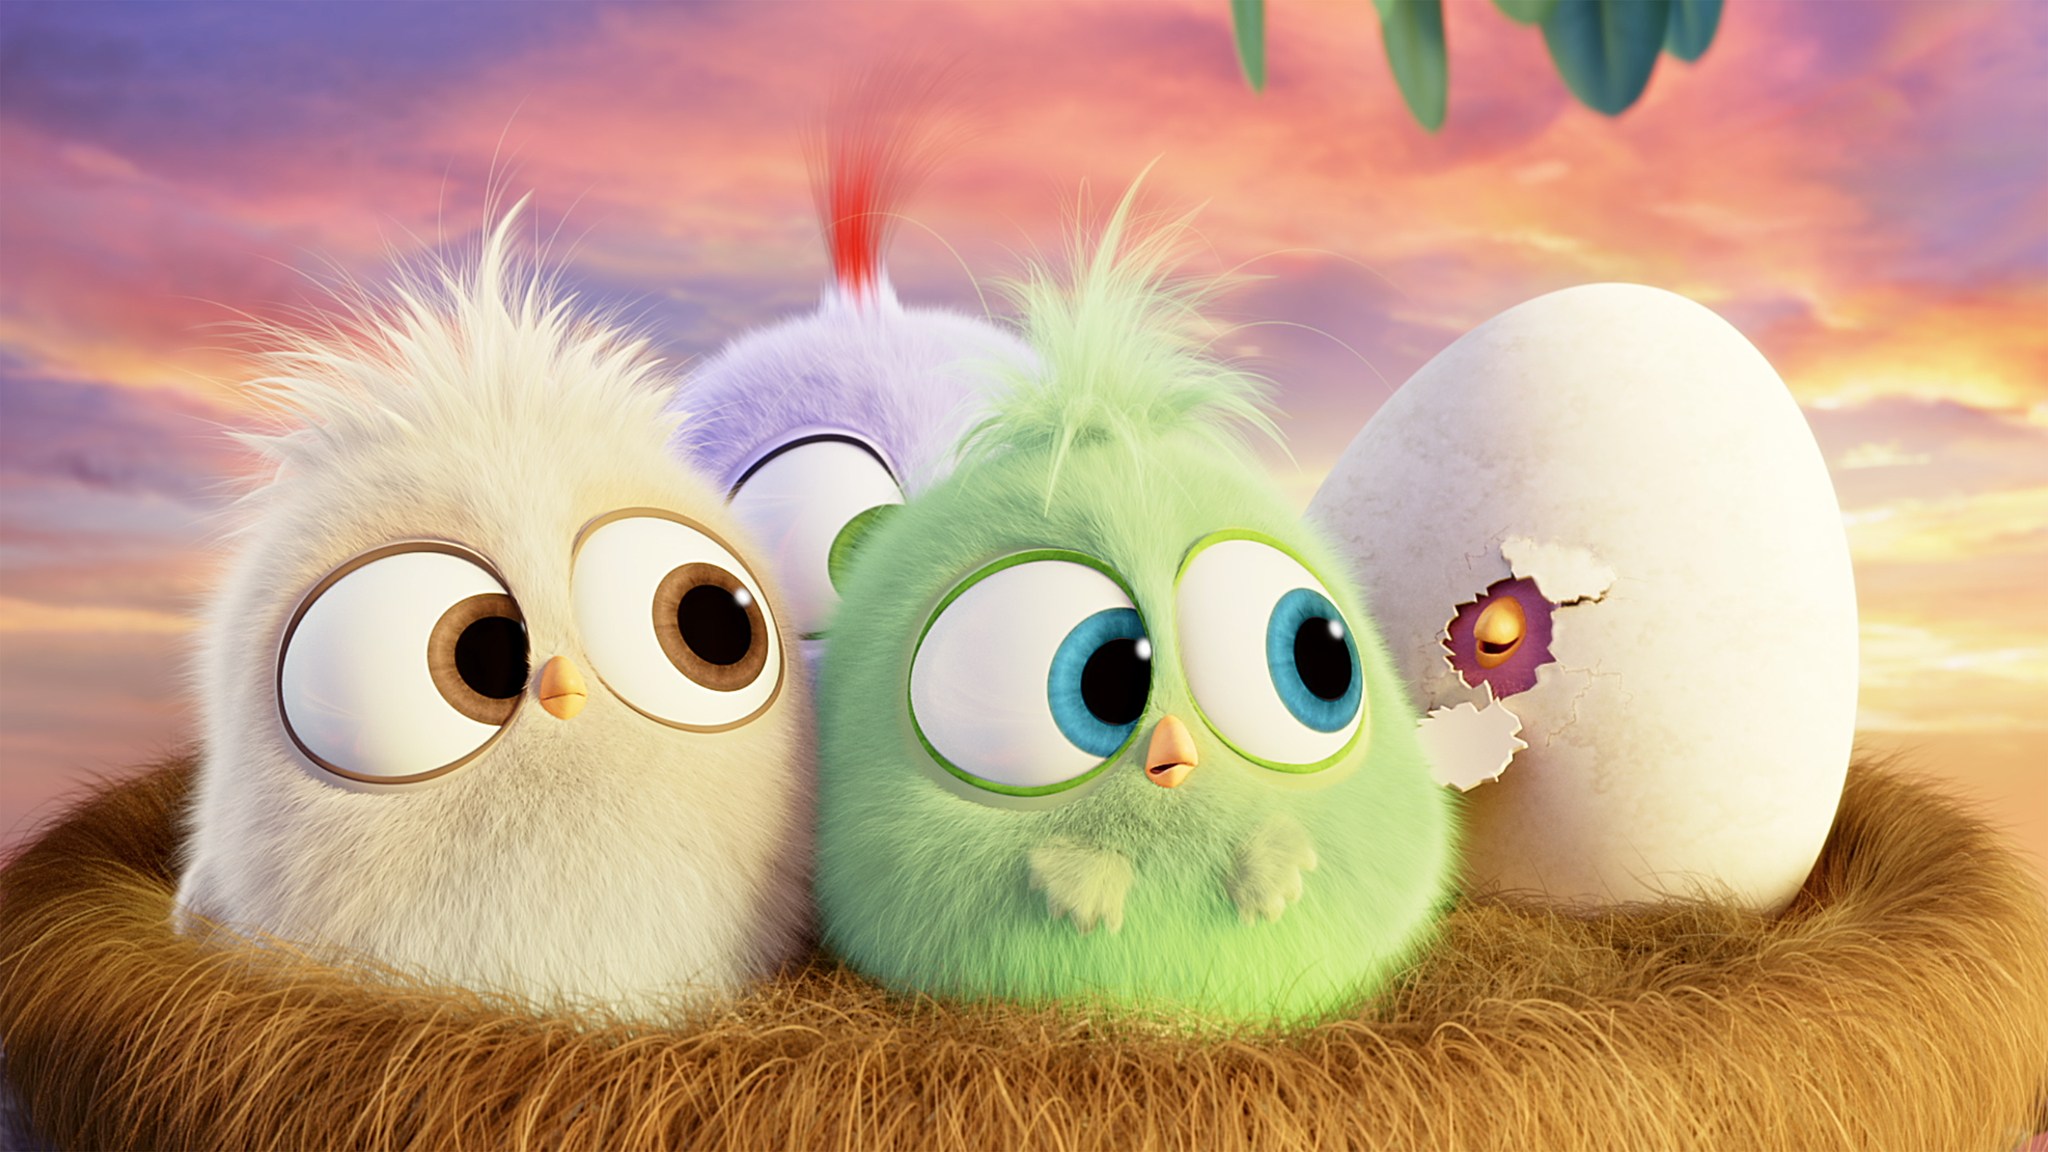 Tuyệt vời hơn là nhìn các em Hatchlings Angry Birds, những chú mồng tơi vô cùng dễ thương và hài hước. Nhanh chóng tải về cho thiết bị của bạn để thưởng thức những khoảnh khắc vui nhộn với các Hatchlings này nhé!